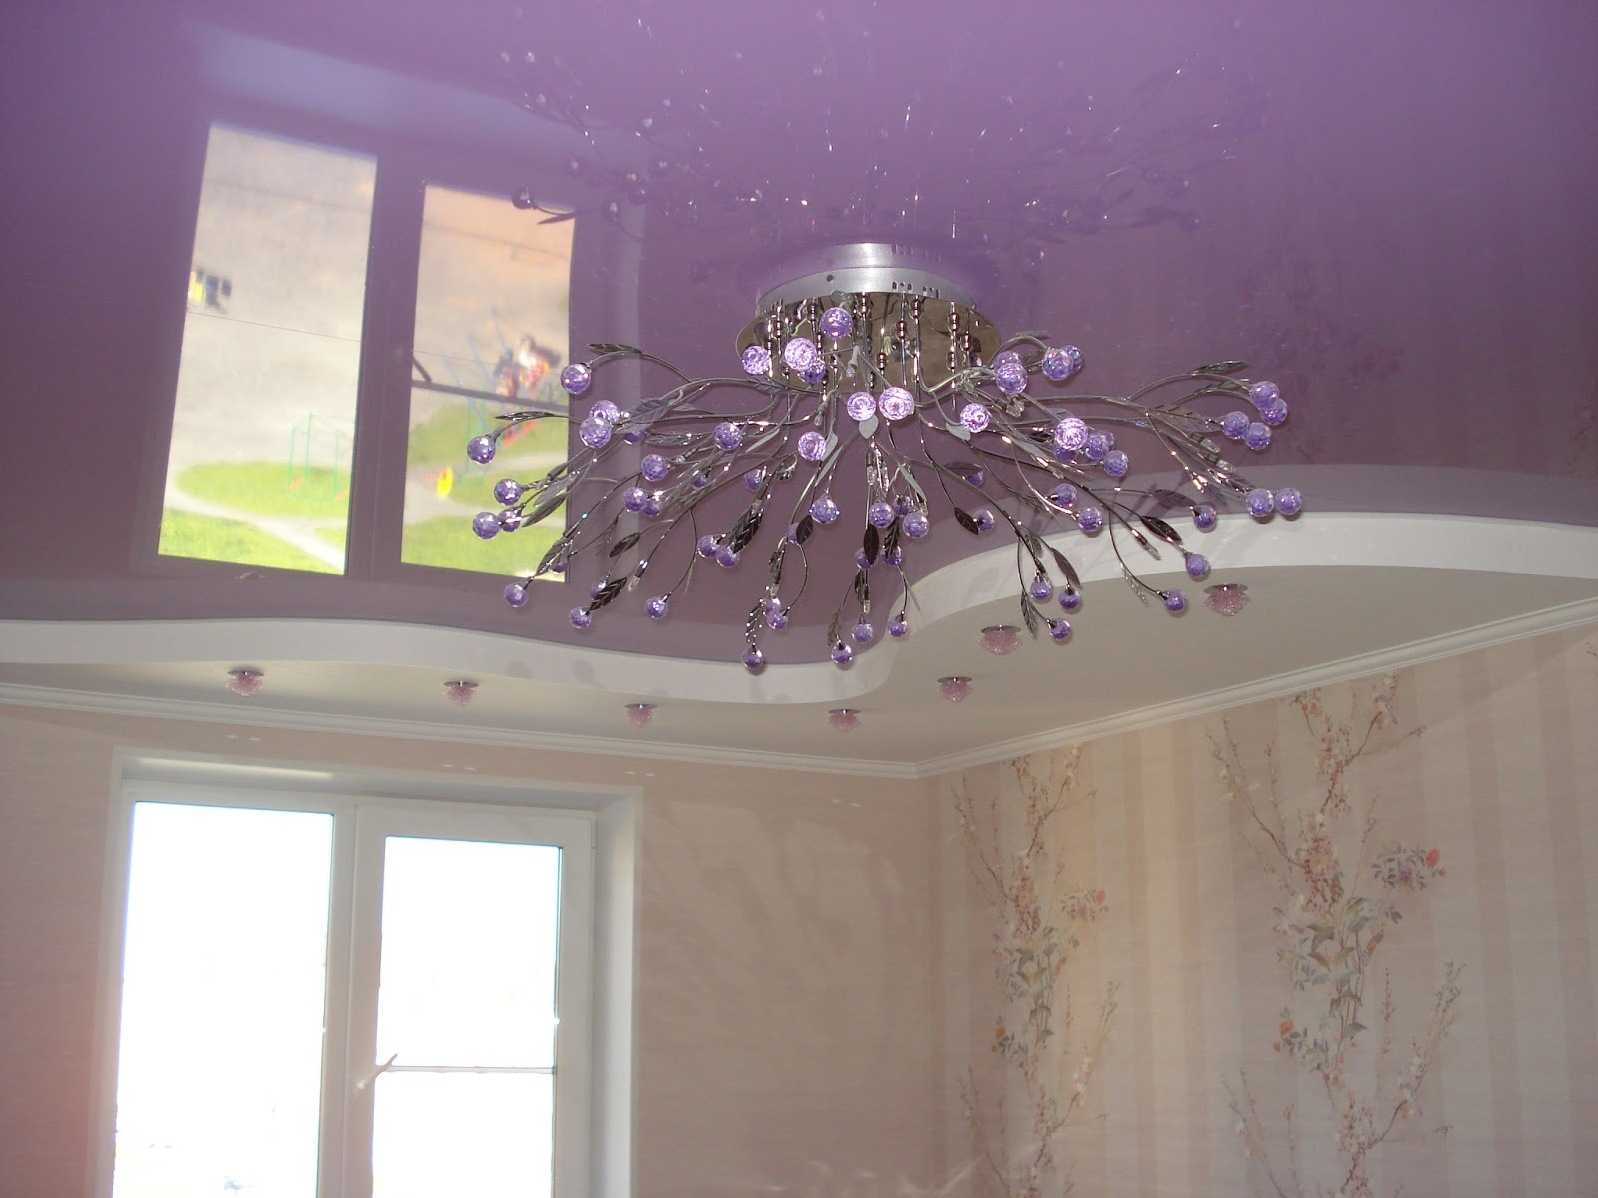 фиолетовый цвет потолка в интерьере